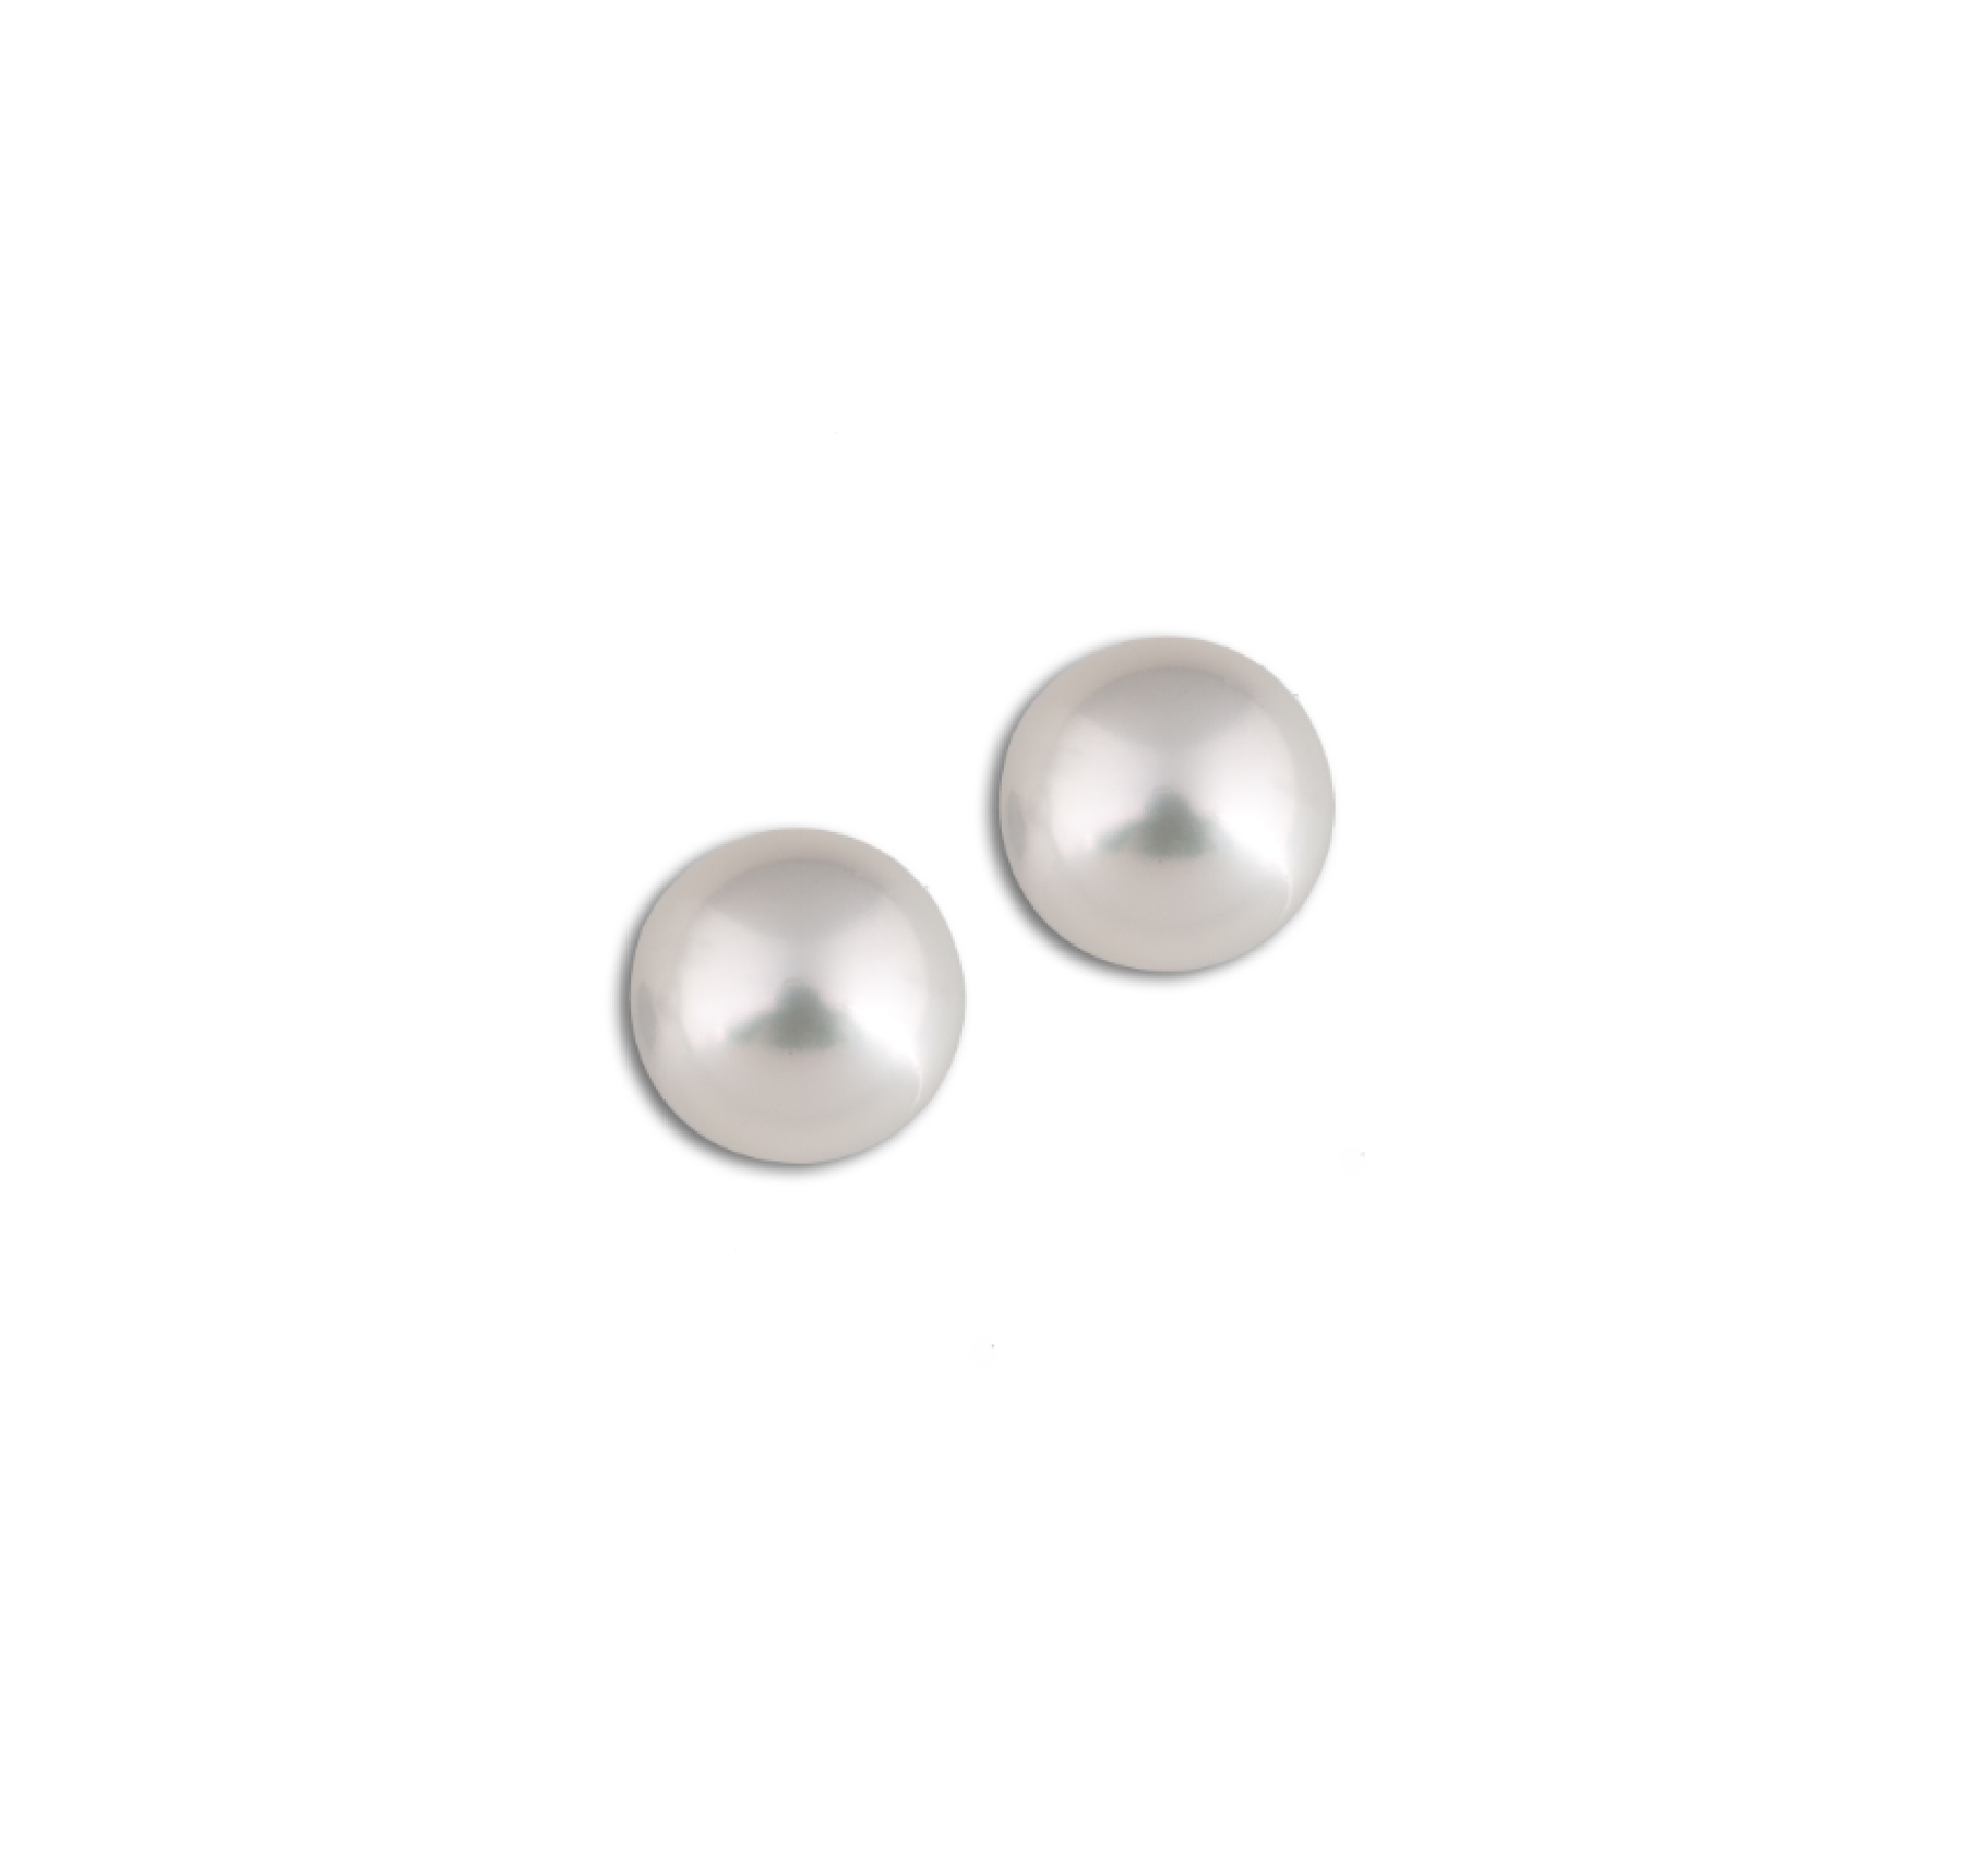 Australian pearl earrings